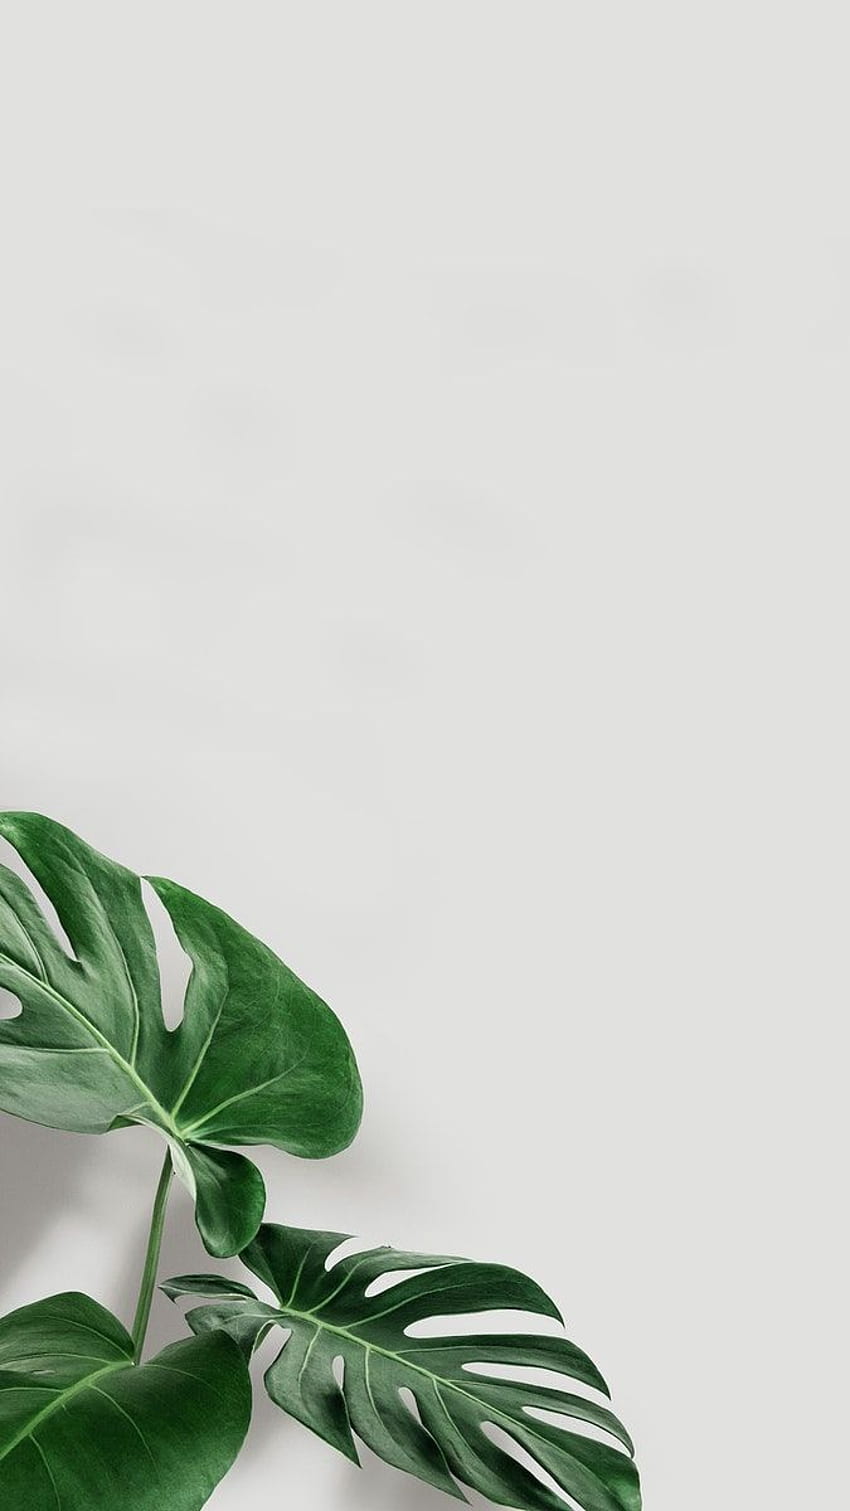 緑のモンステラの葉のプレミアム イラスト コピー スペース。 iPhone の植物, 葉の iphone, ミニマル, モンステラの葉 HD電話の壁紙